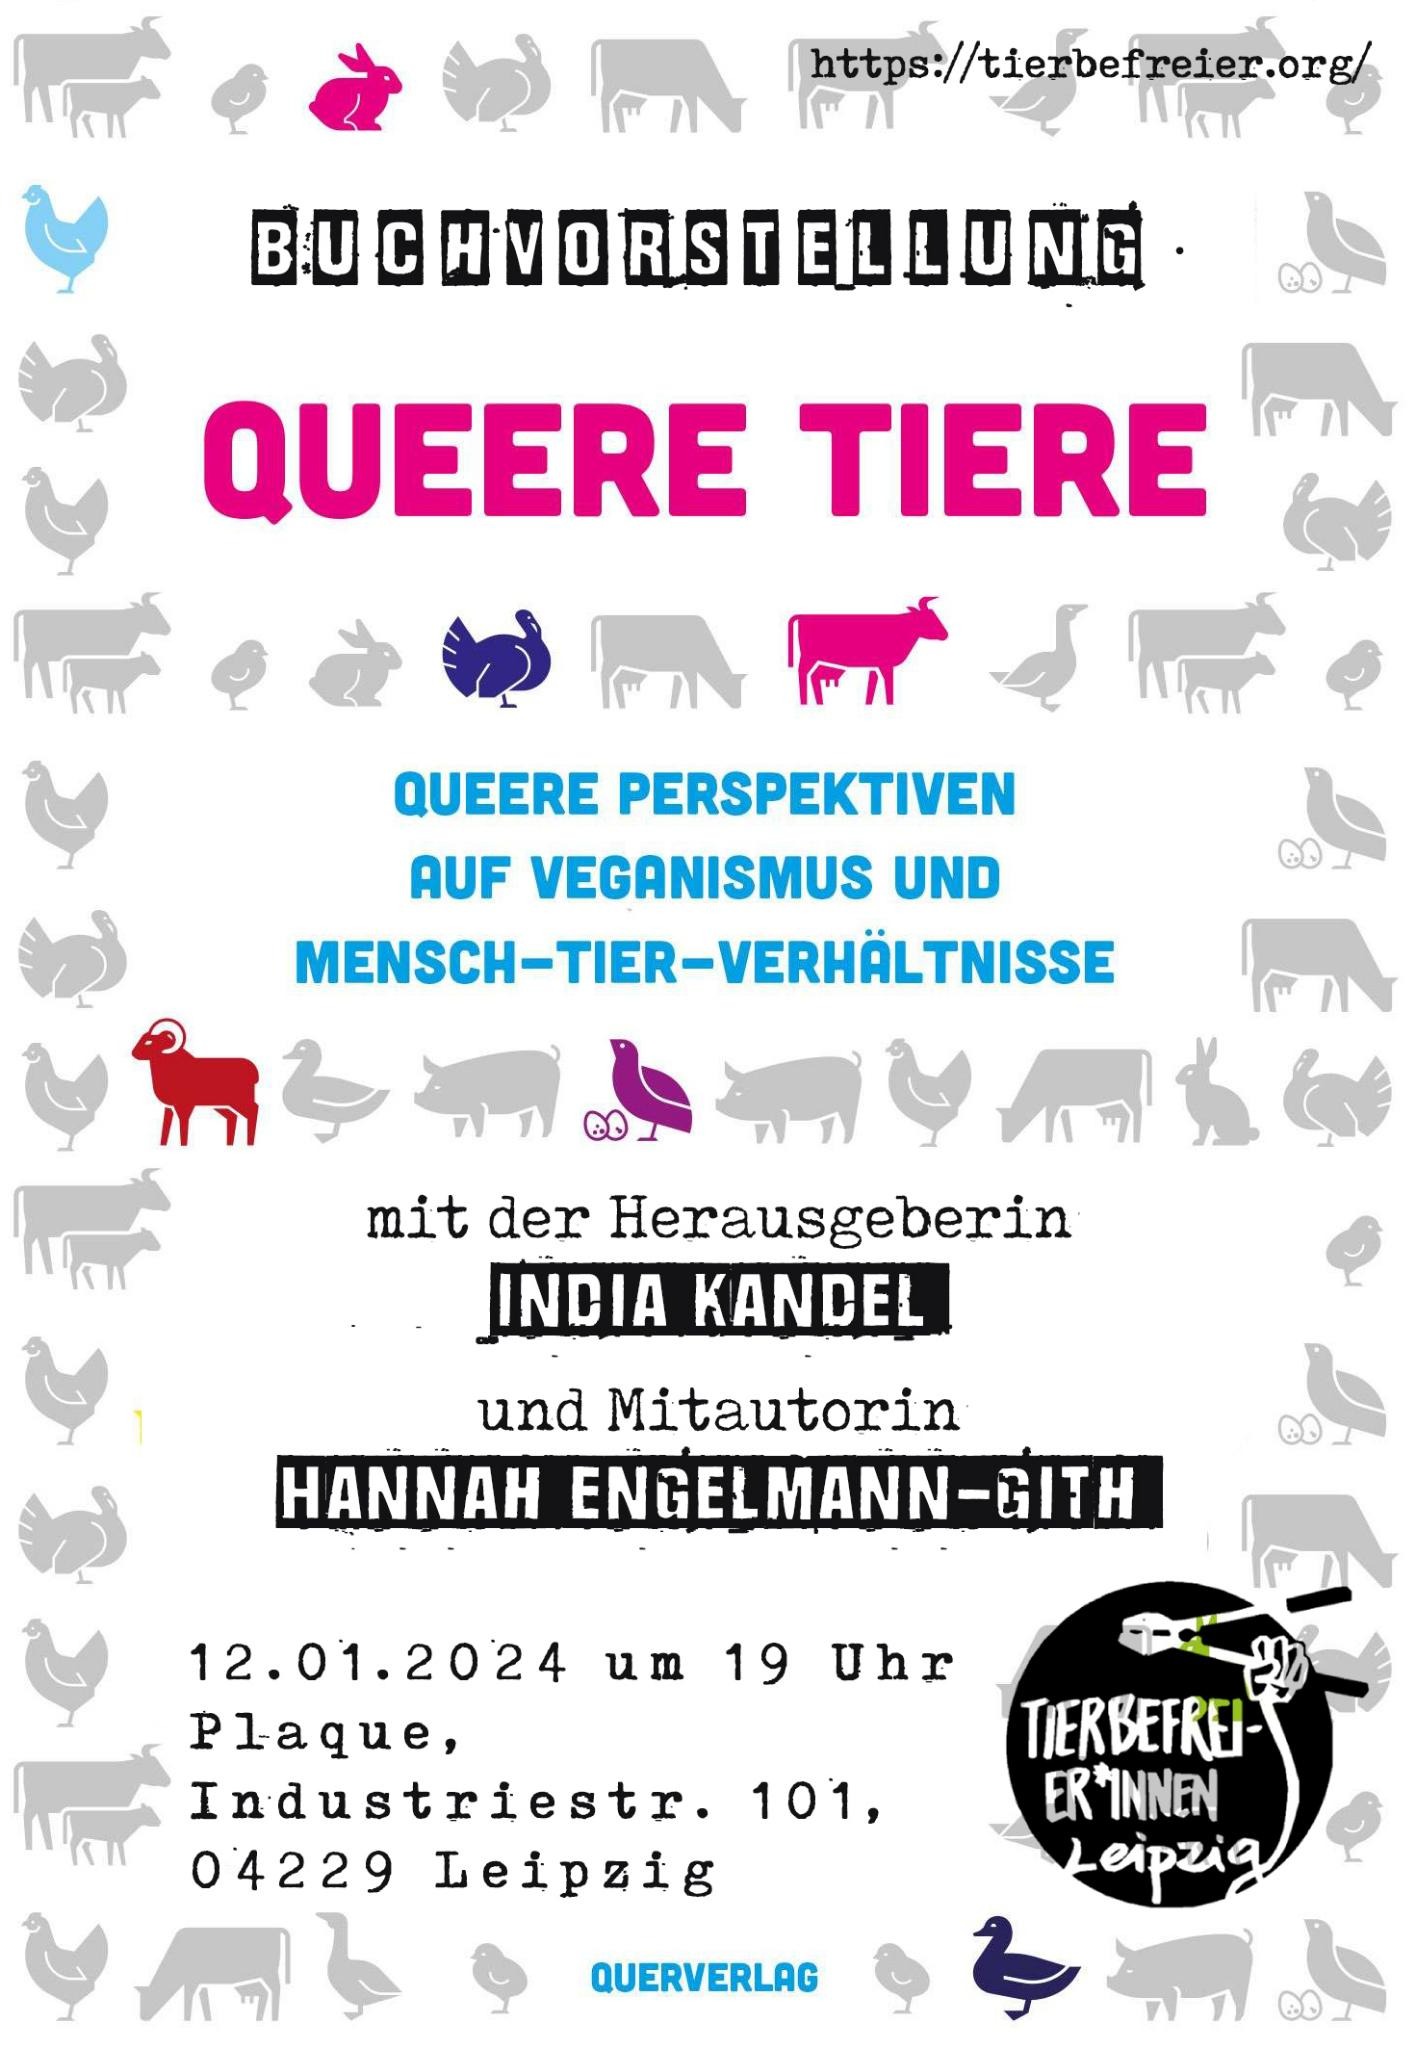 Buchvorstellung "Queere Tiere" mit Herausgeberin India Kandel und Co-Autorin Hannah Engelmann-Gith